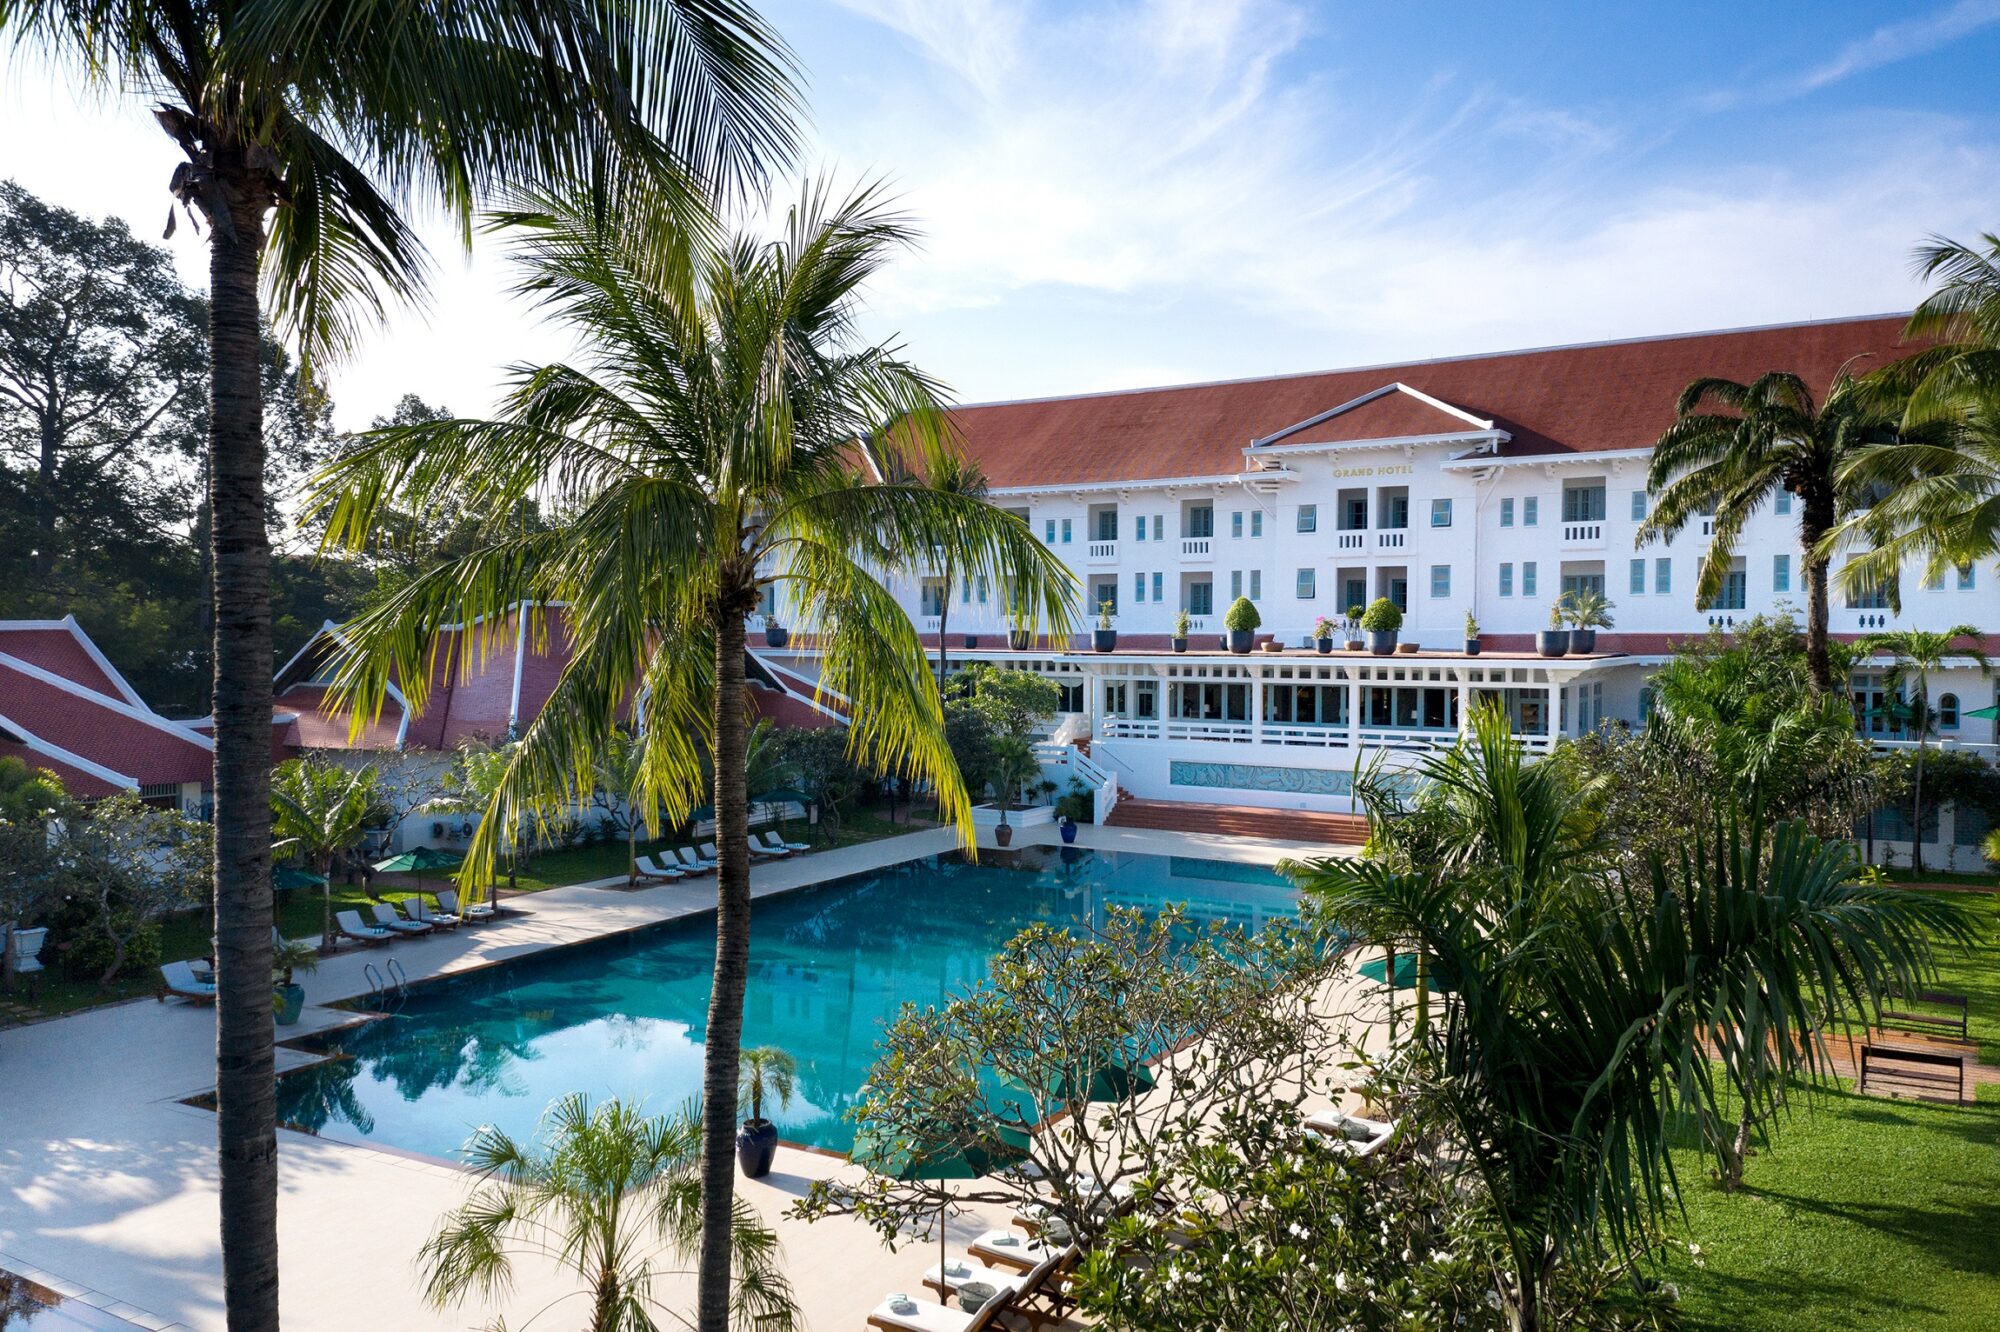 Raffles-Grand-Hotel-dAngkor-Garden-and-Pools.jpg